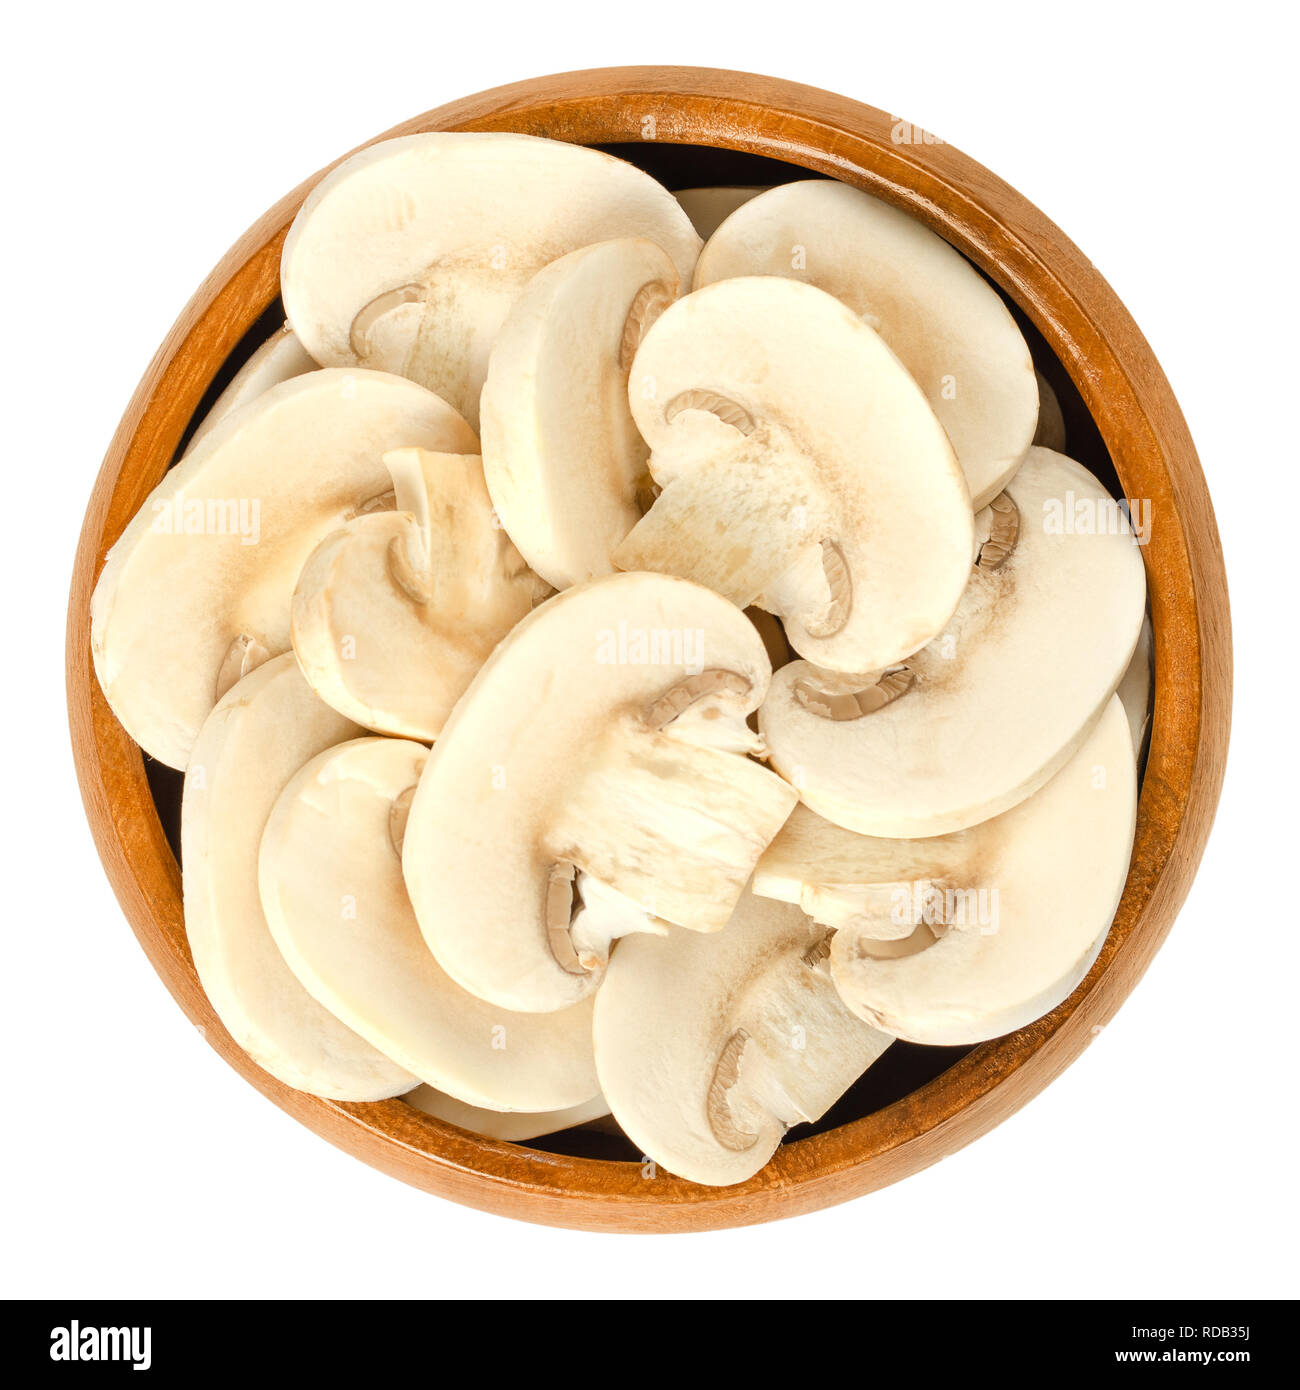 Fette di bianco di funghi champignon in ciotola di legno. Agaricus bisporus, chiamato anche comune, pulsante, coltivate o tabella fungo. Foto Stock